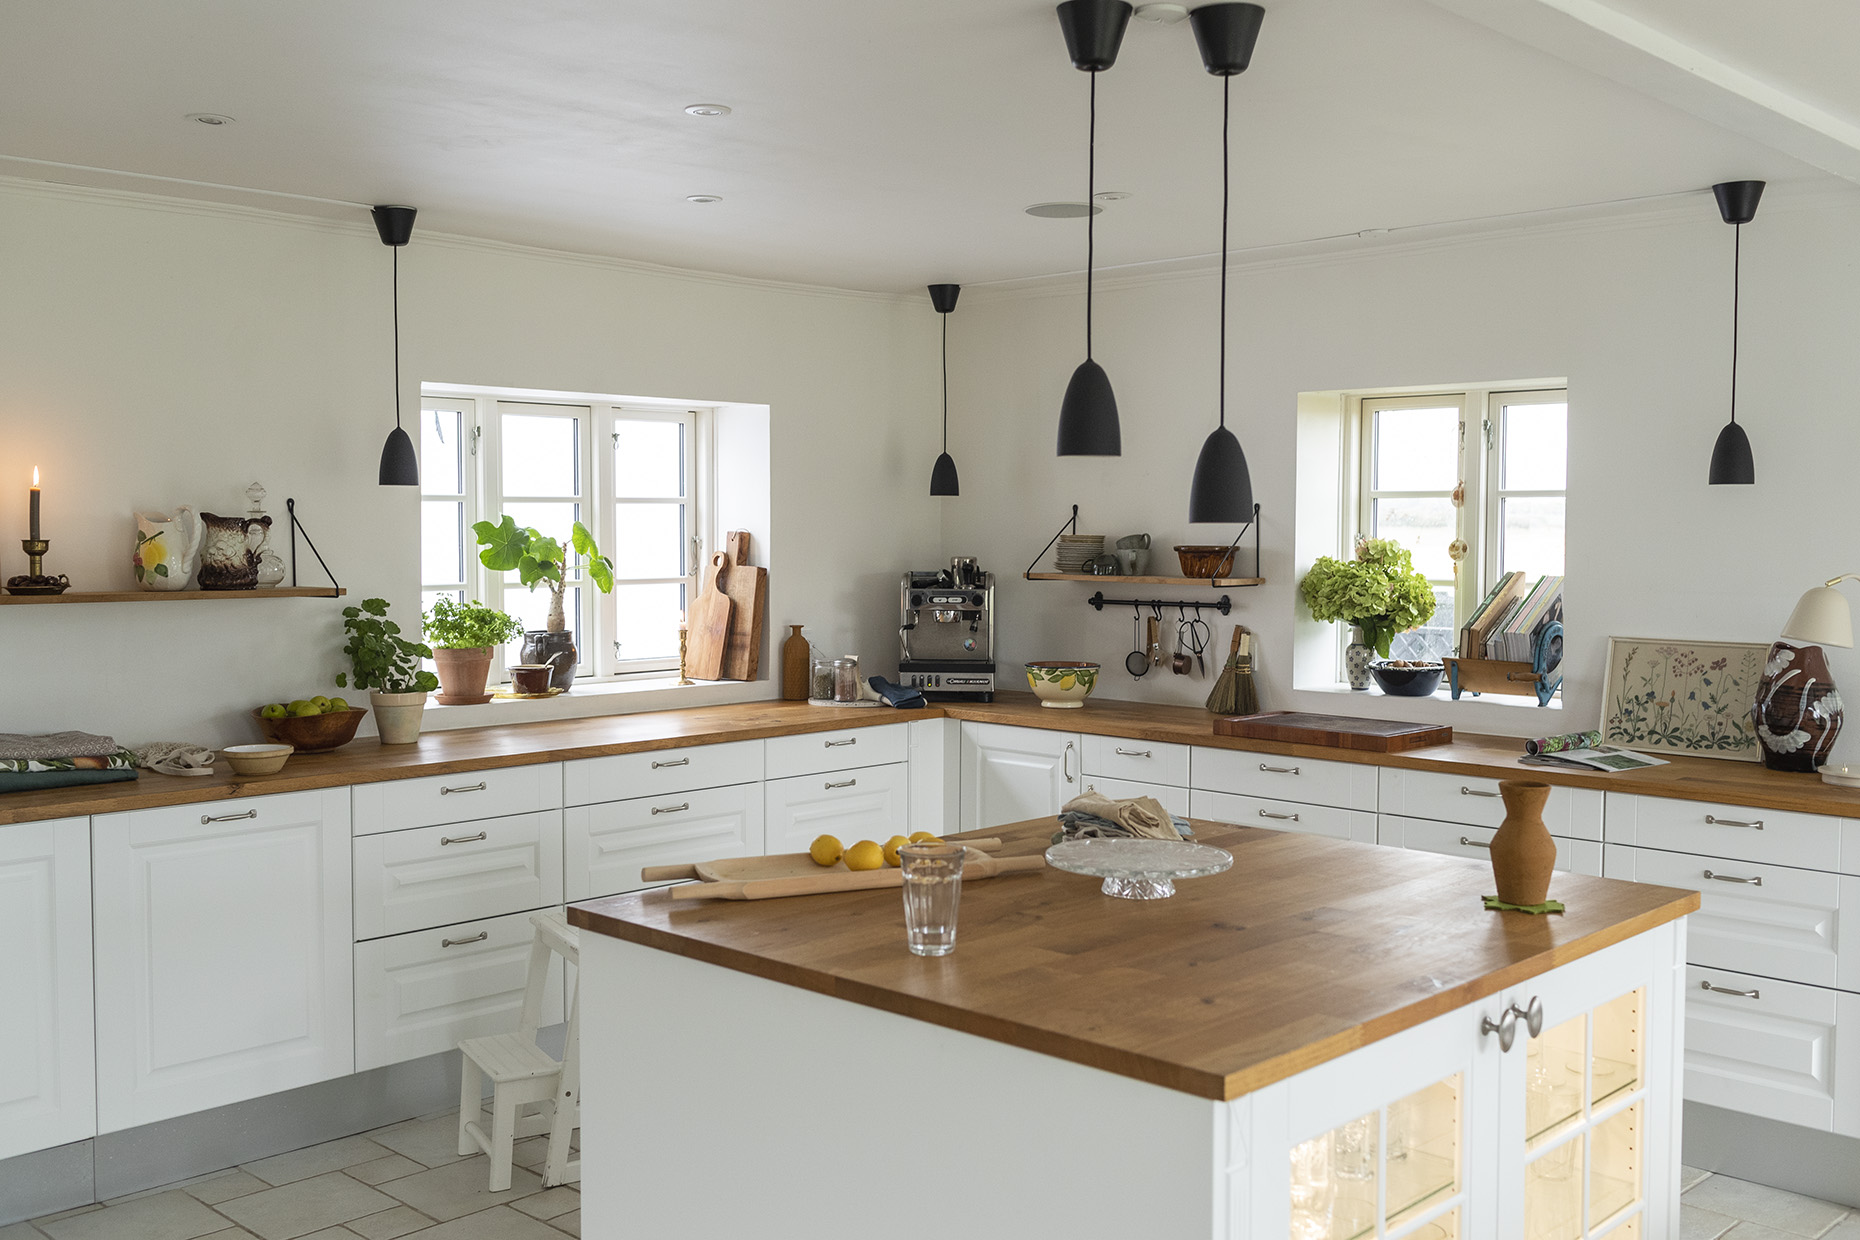 udskille dateret Tegn et billede Køkkenbelysning • Få inspiration til belysning i køkkenet